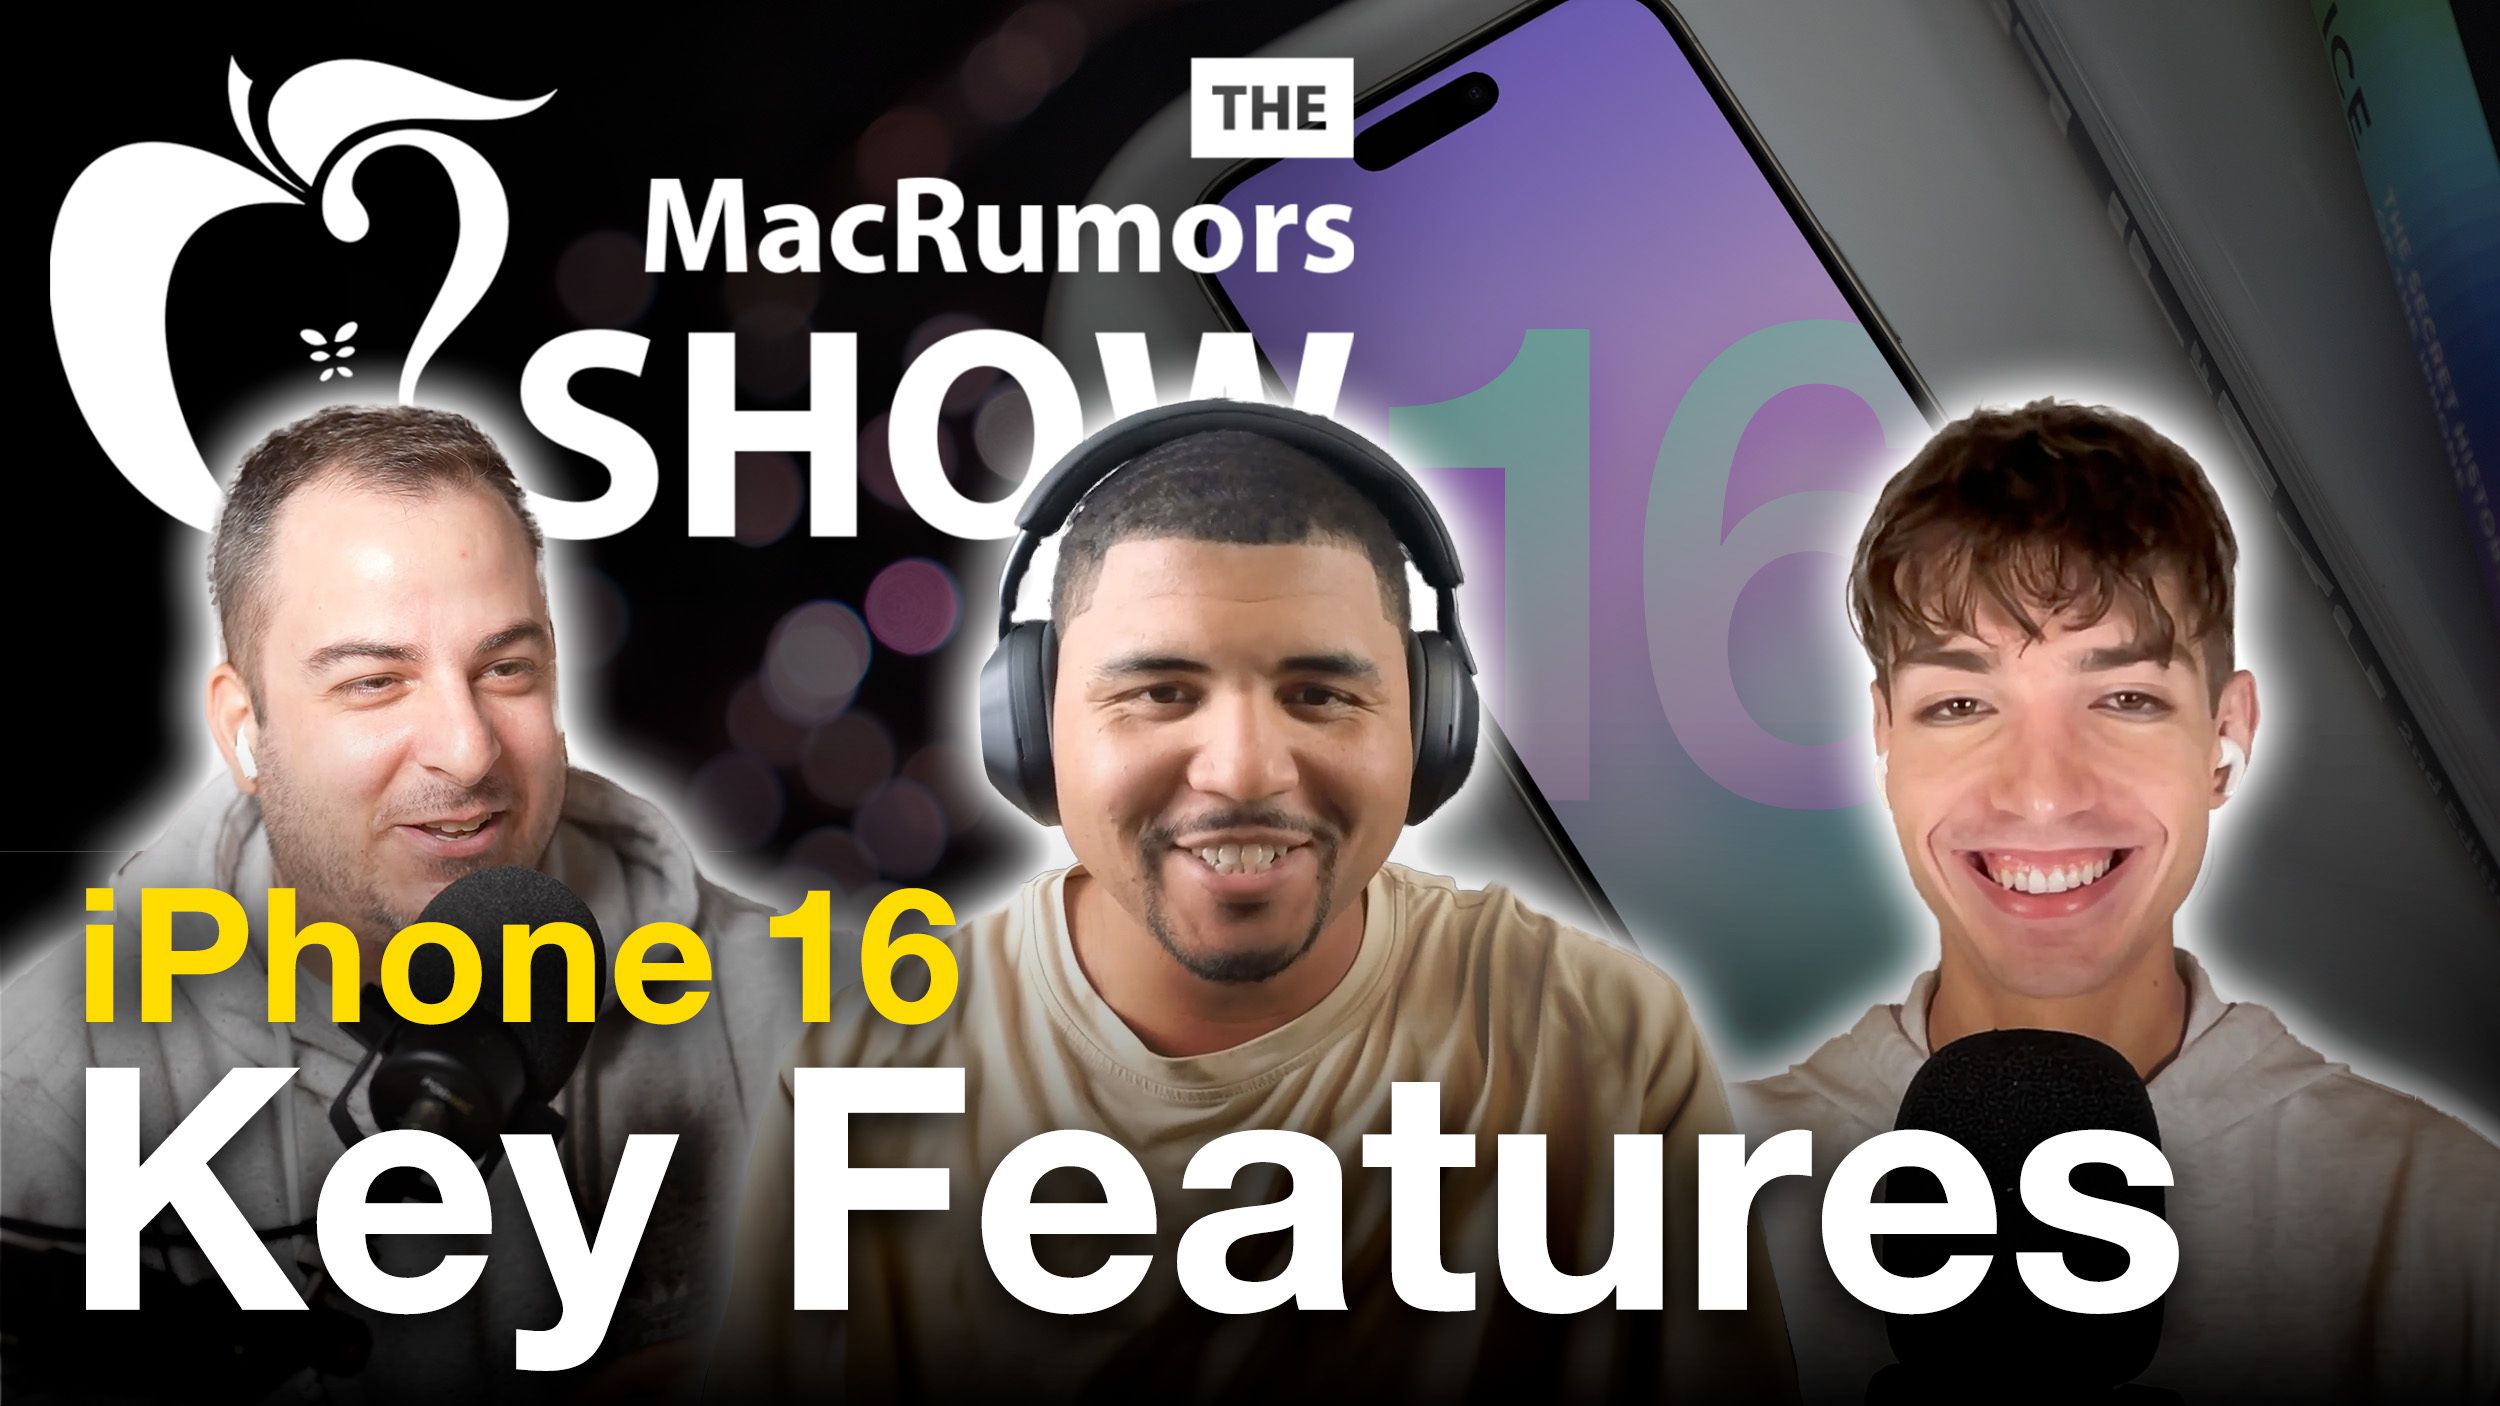 MacRumors Show: Kevin Nether vertelt over de belangrijkste kenmerken van de iPhone 16